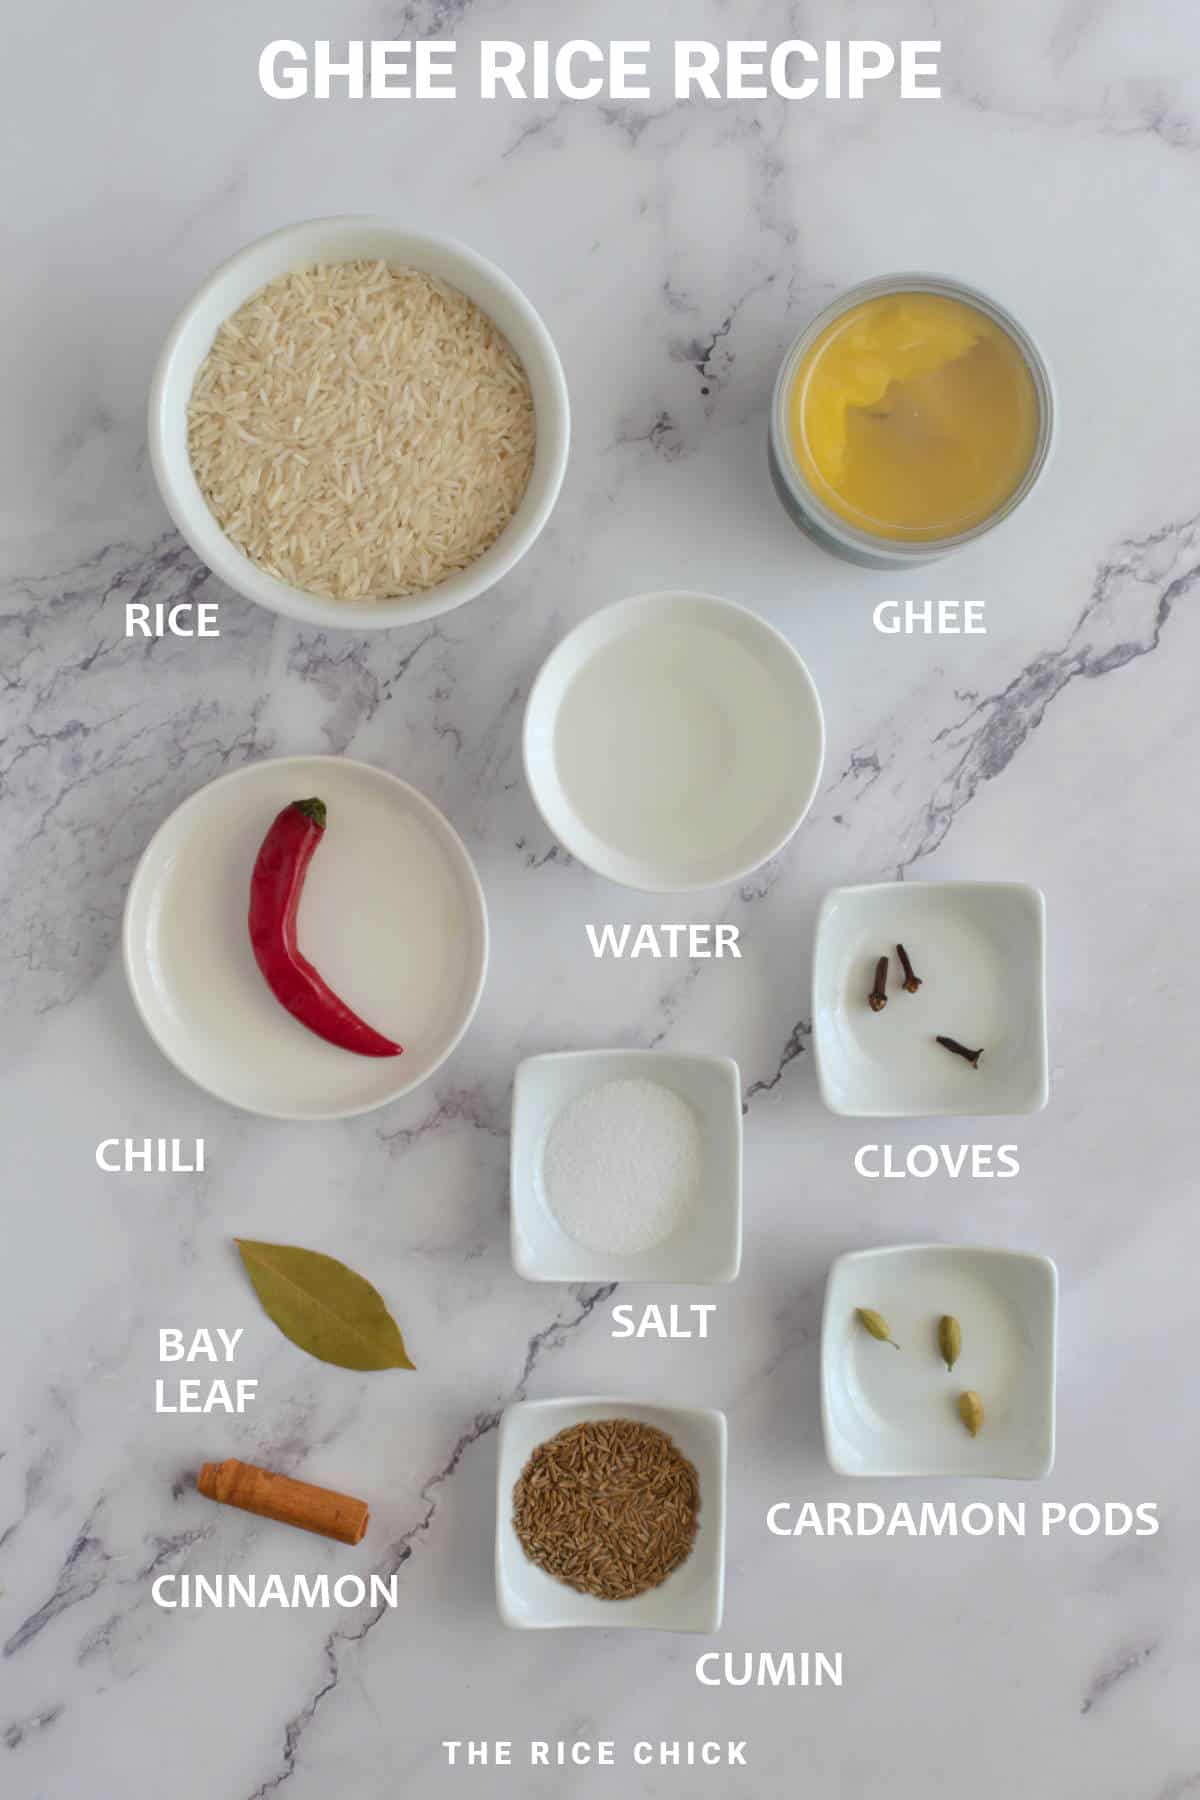 Ghee rice recipe ingredients.